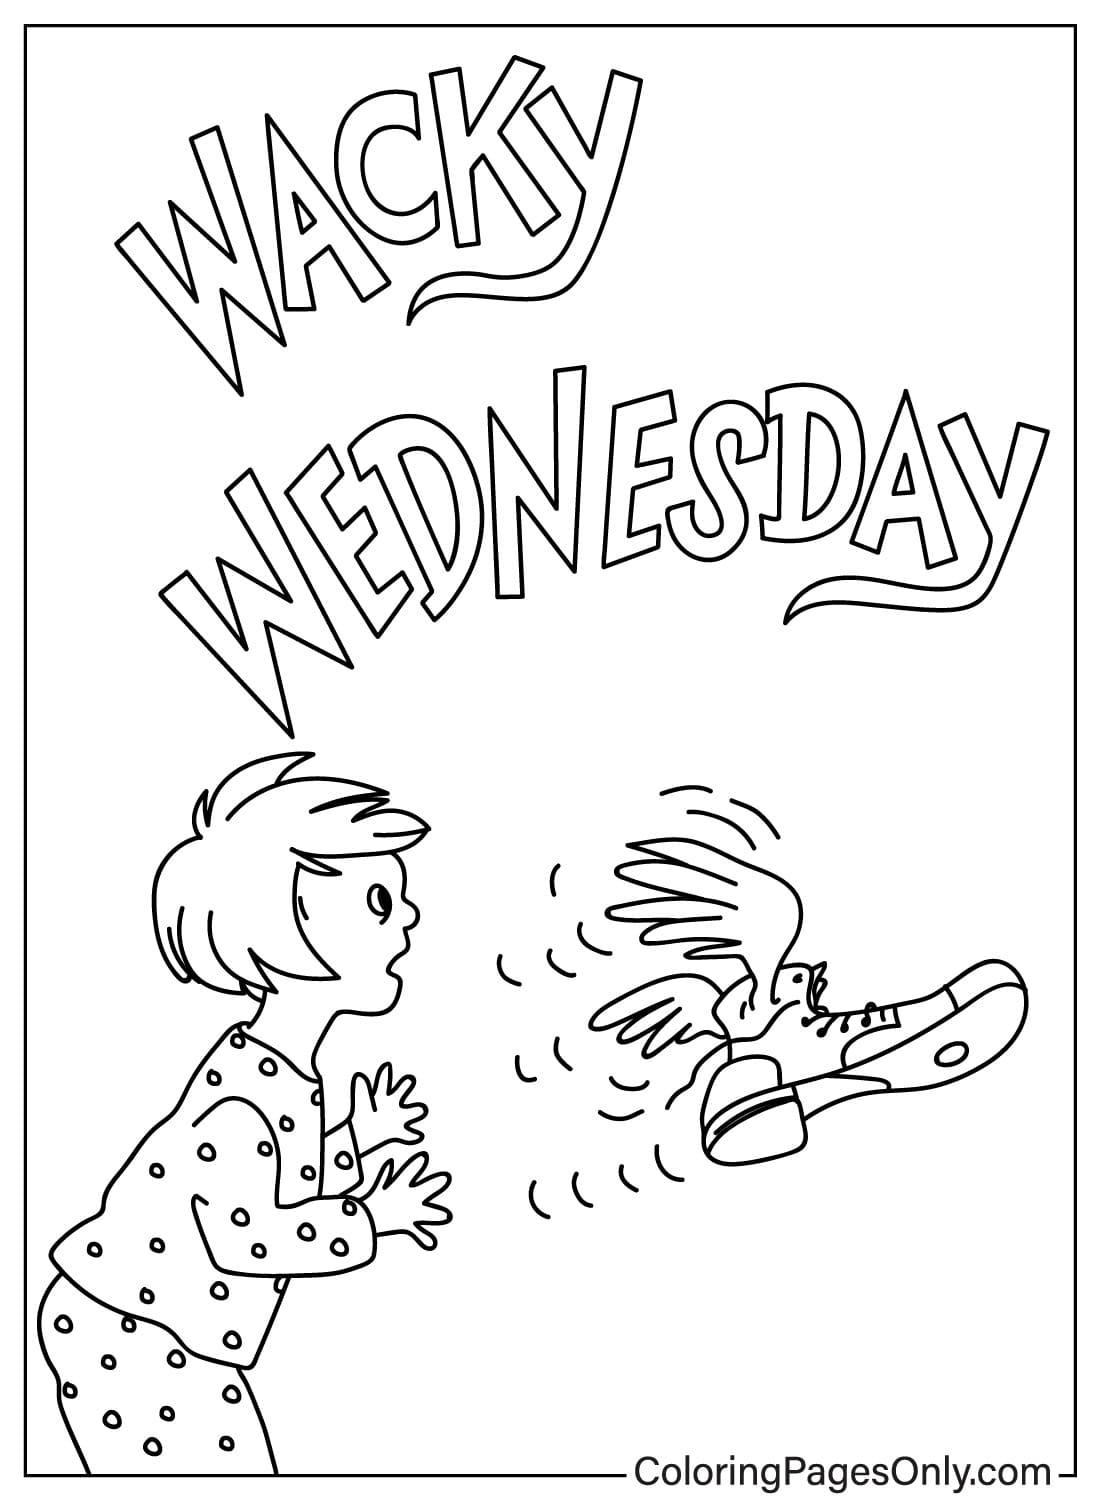 Dr. Seuss Wacky Wednesday Página para colorear de Wacky Wednesday